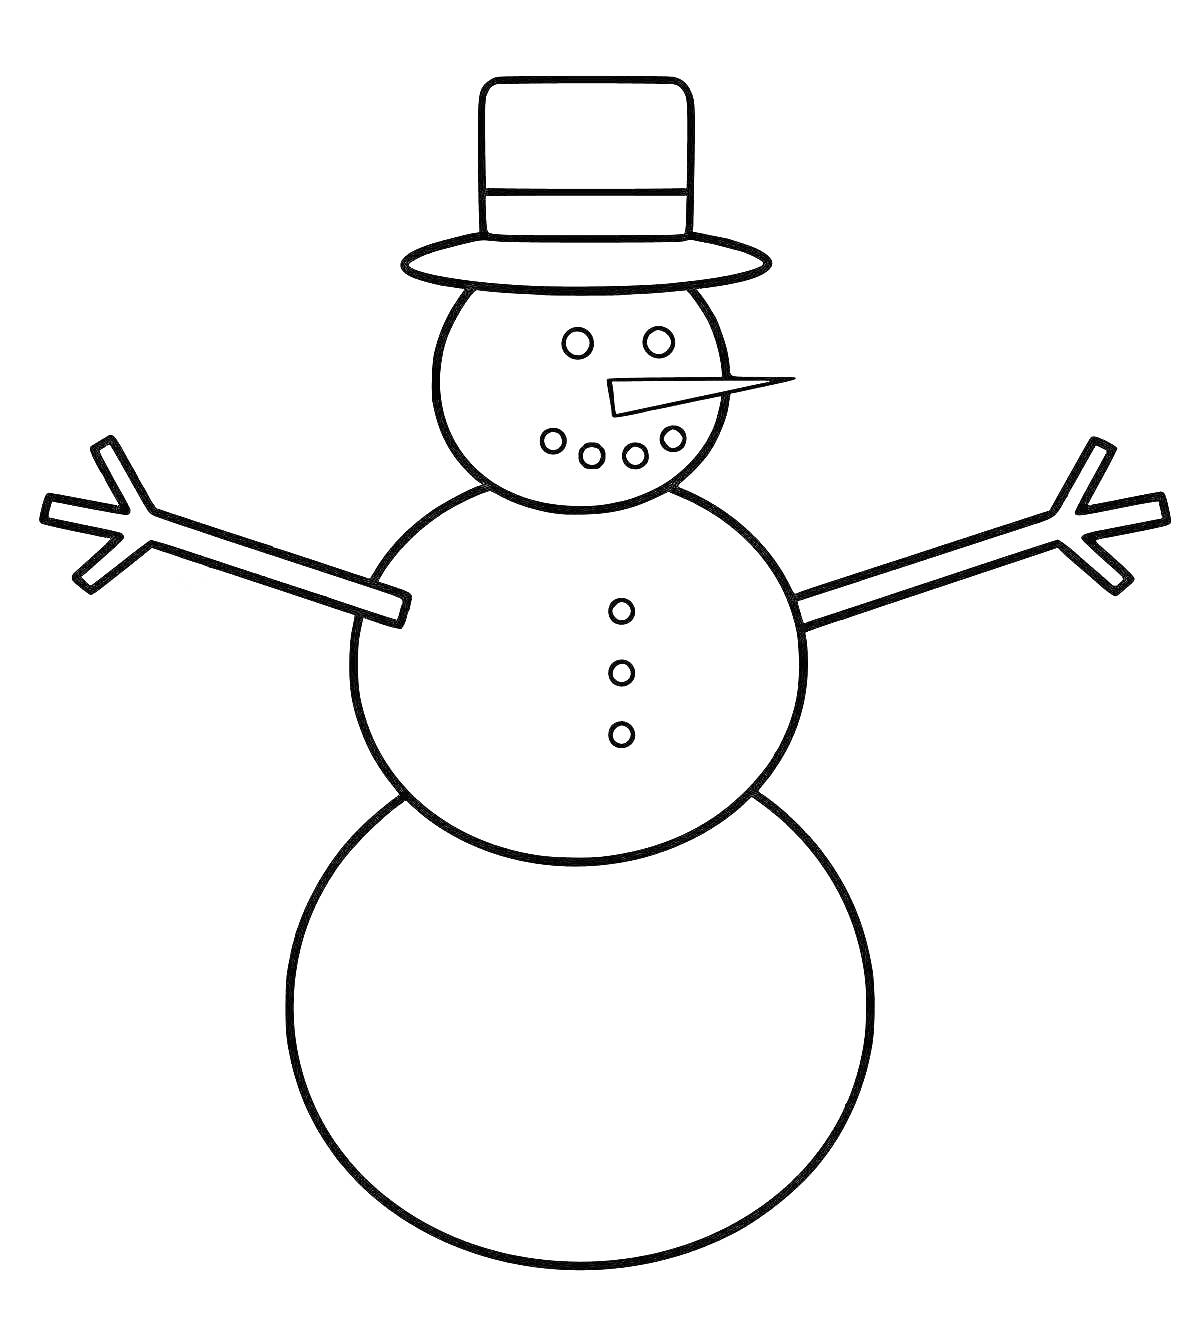 Раскраска Снеговик с шляпой, морковным носом, пуговицами и ветками в качестве рук